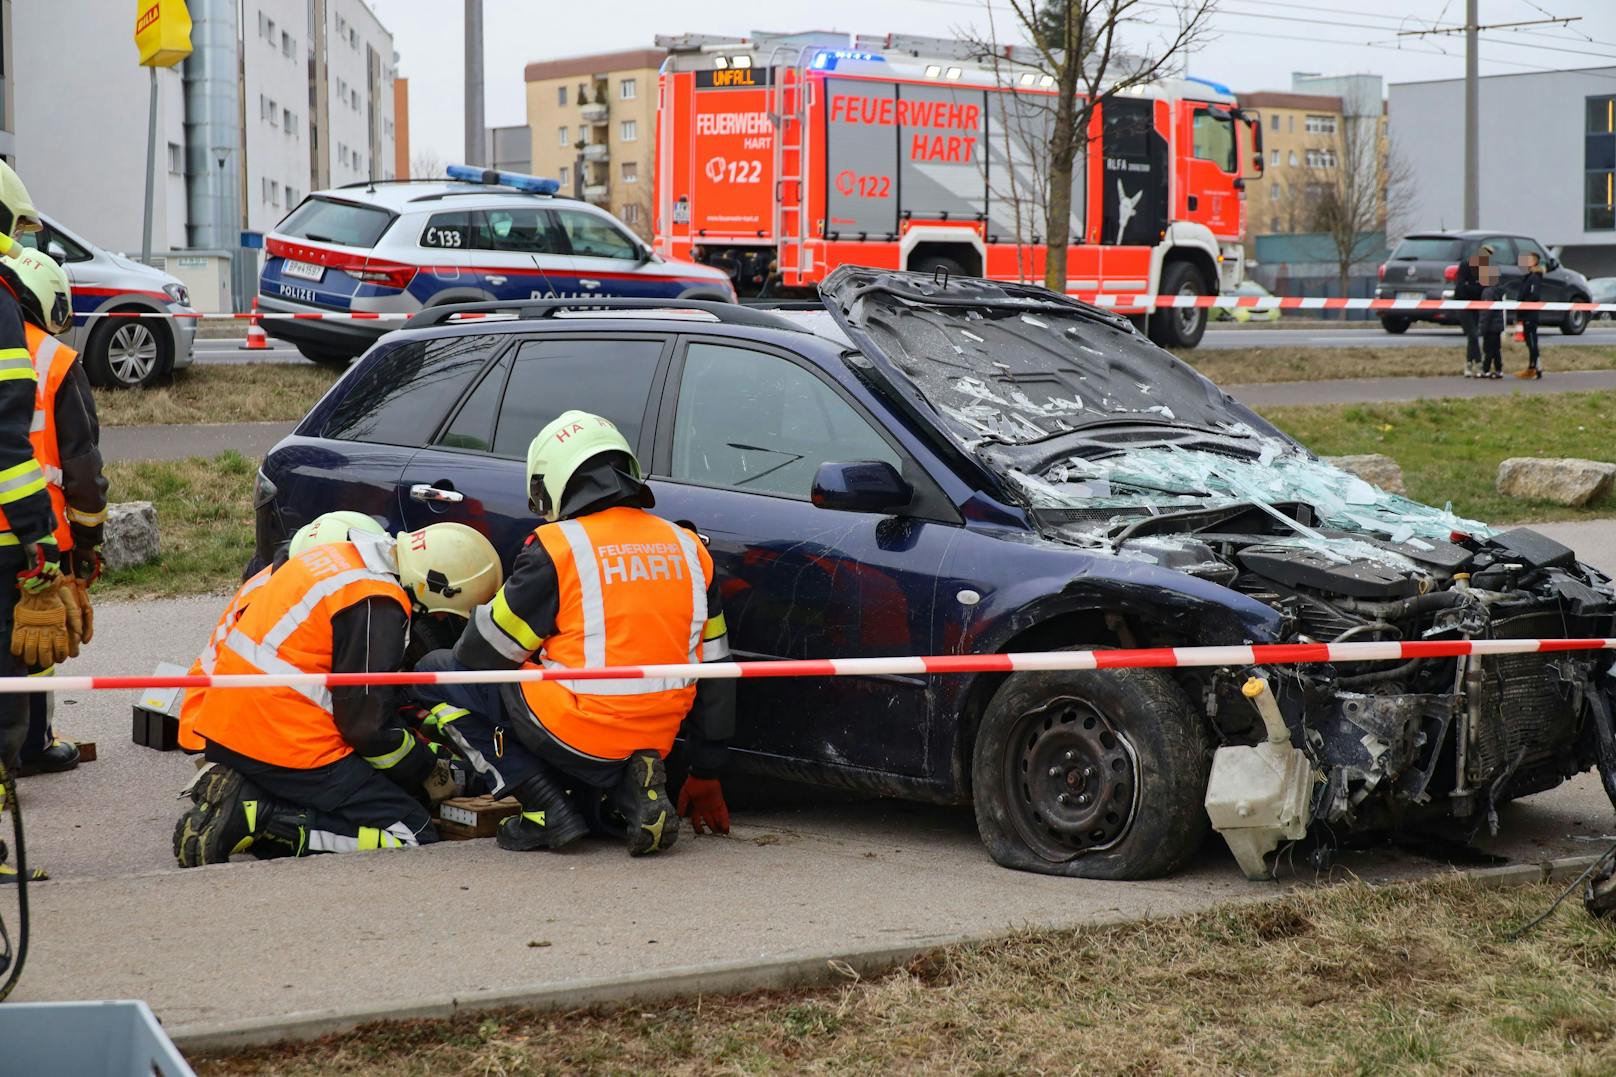 Für die Einsatzkräfte wurde Großalarm ausgelöst. Derzeit stehen zwei Feuerwehren, die Polizei und das Rote Kreuz mit zahlreichen Fahrzeugen im Einsatz.